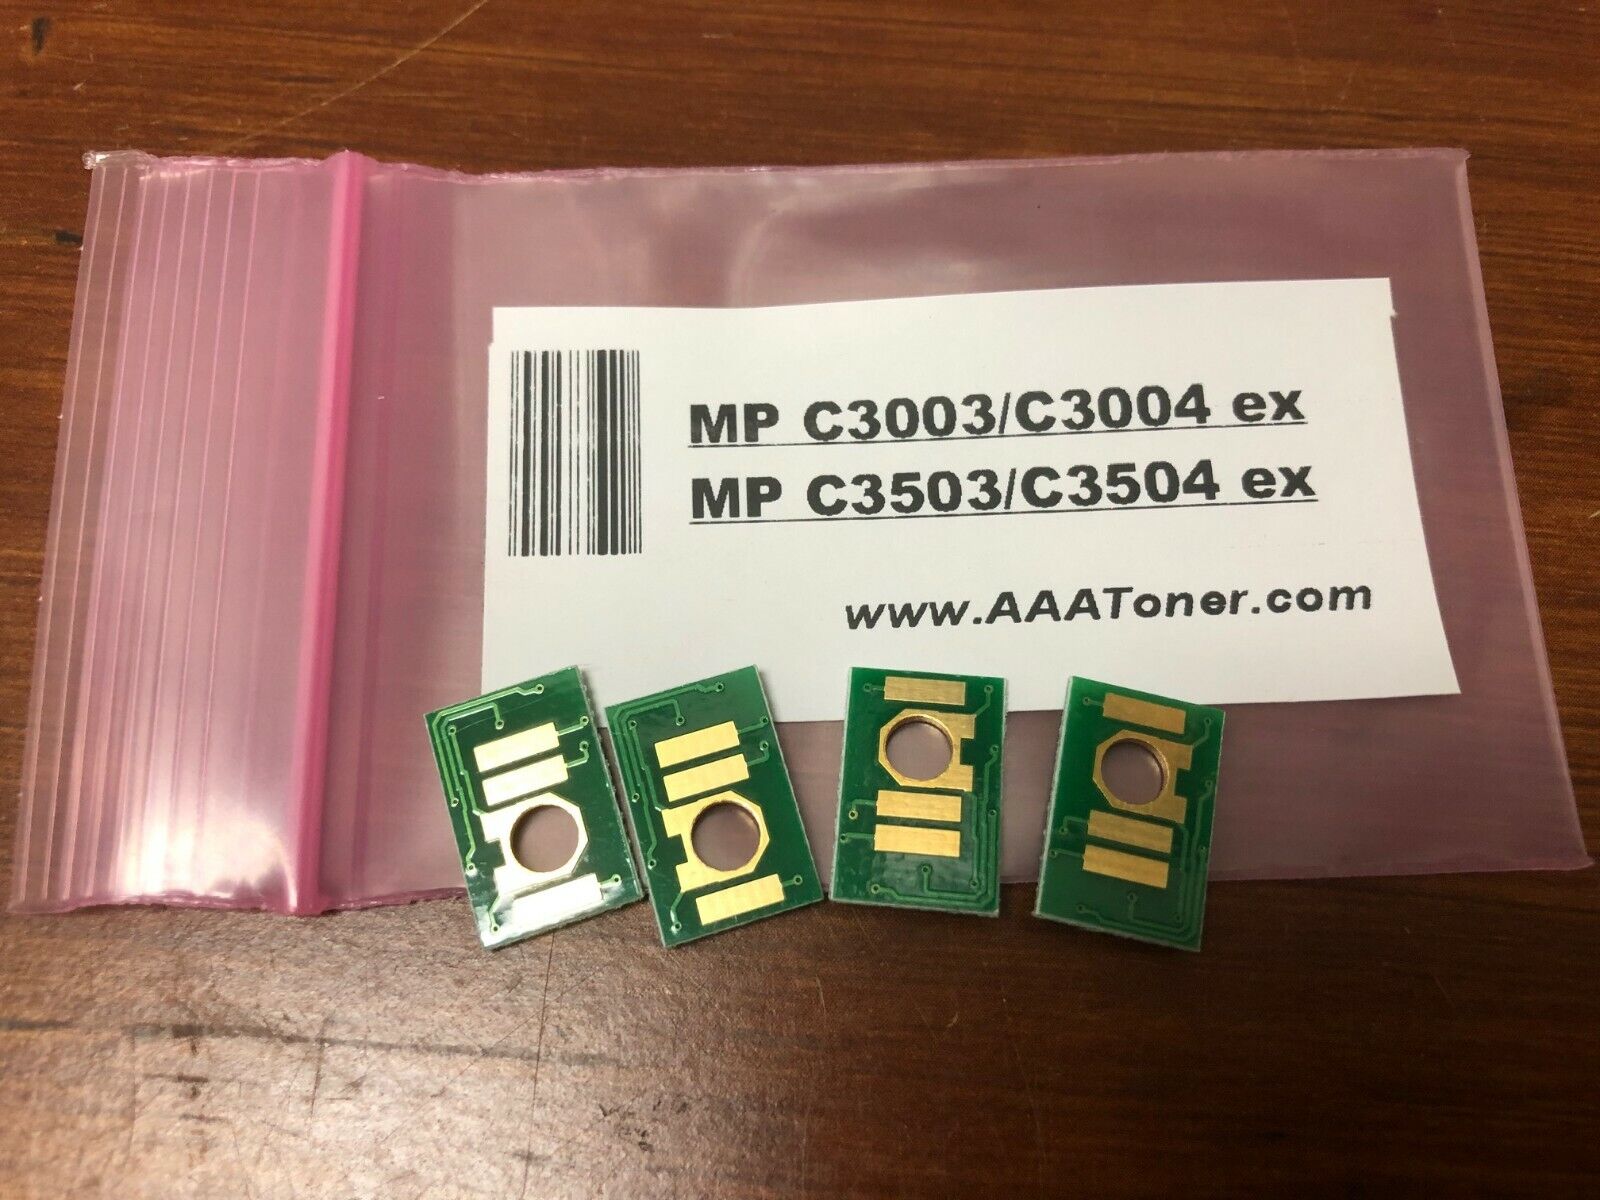 4 x Toner Chip for Ricoh MP C3003, MP C3004, MP C3503 MP C3504 ex Refill